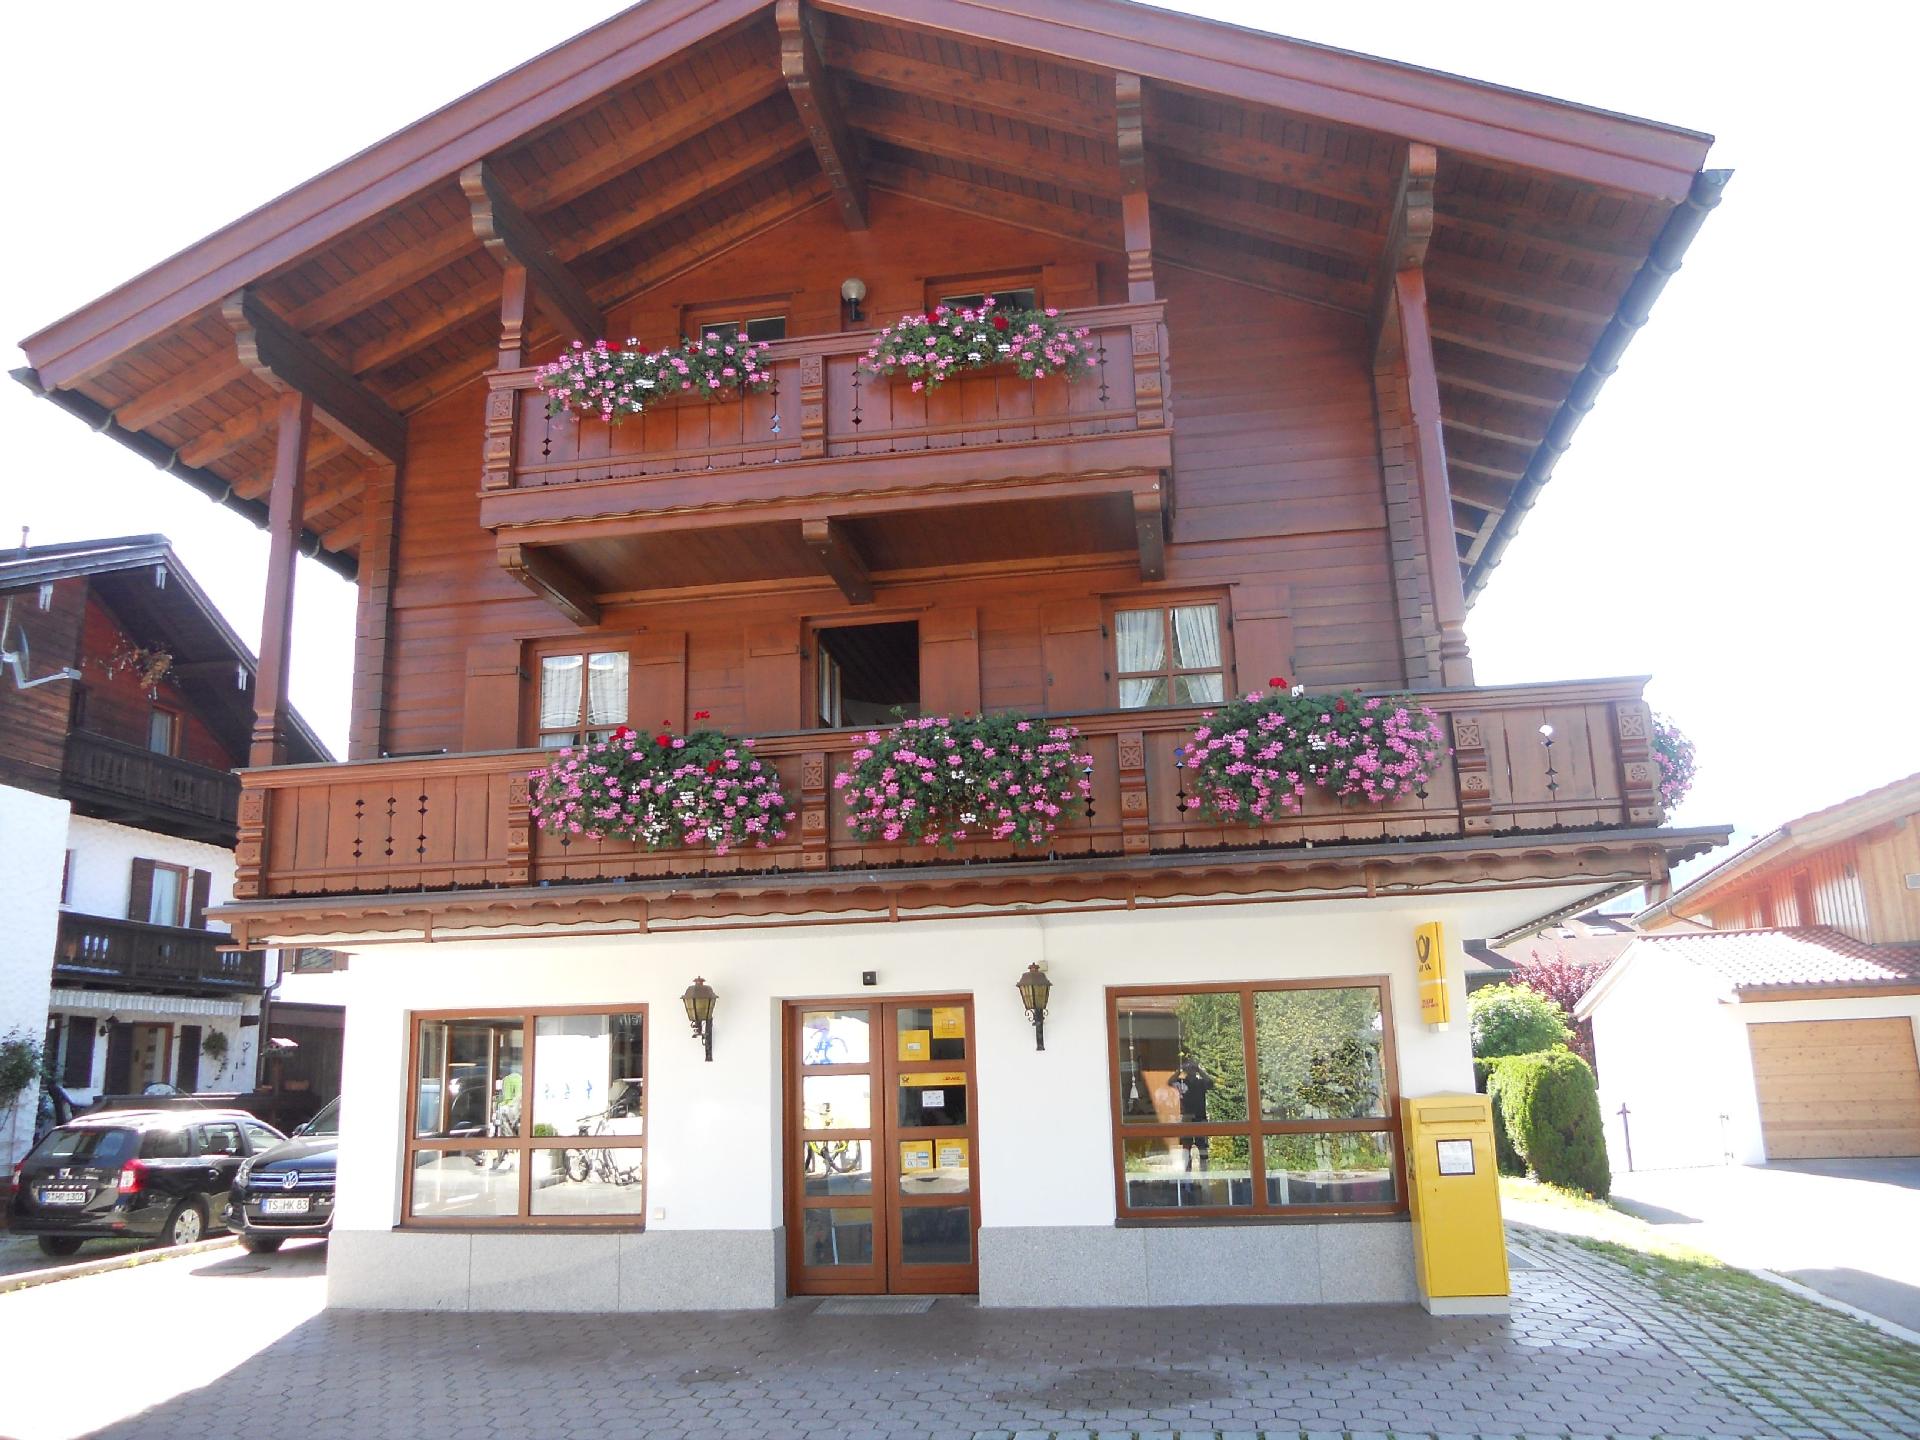 Gemütliche Ferienwohnung mit Balkonen, direkt   Chiemgauer Alpen